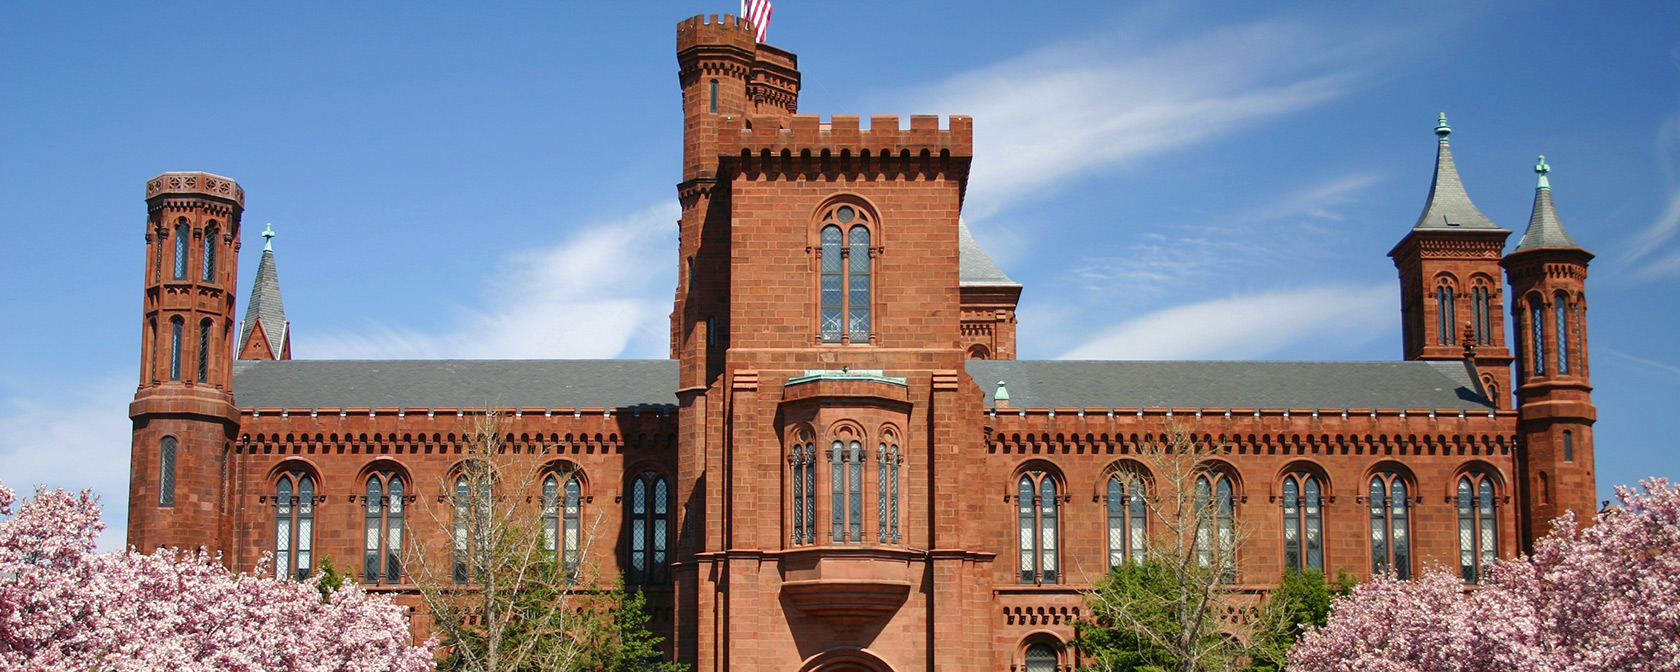 Castello di Smithsonian